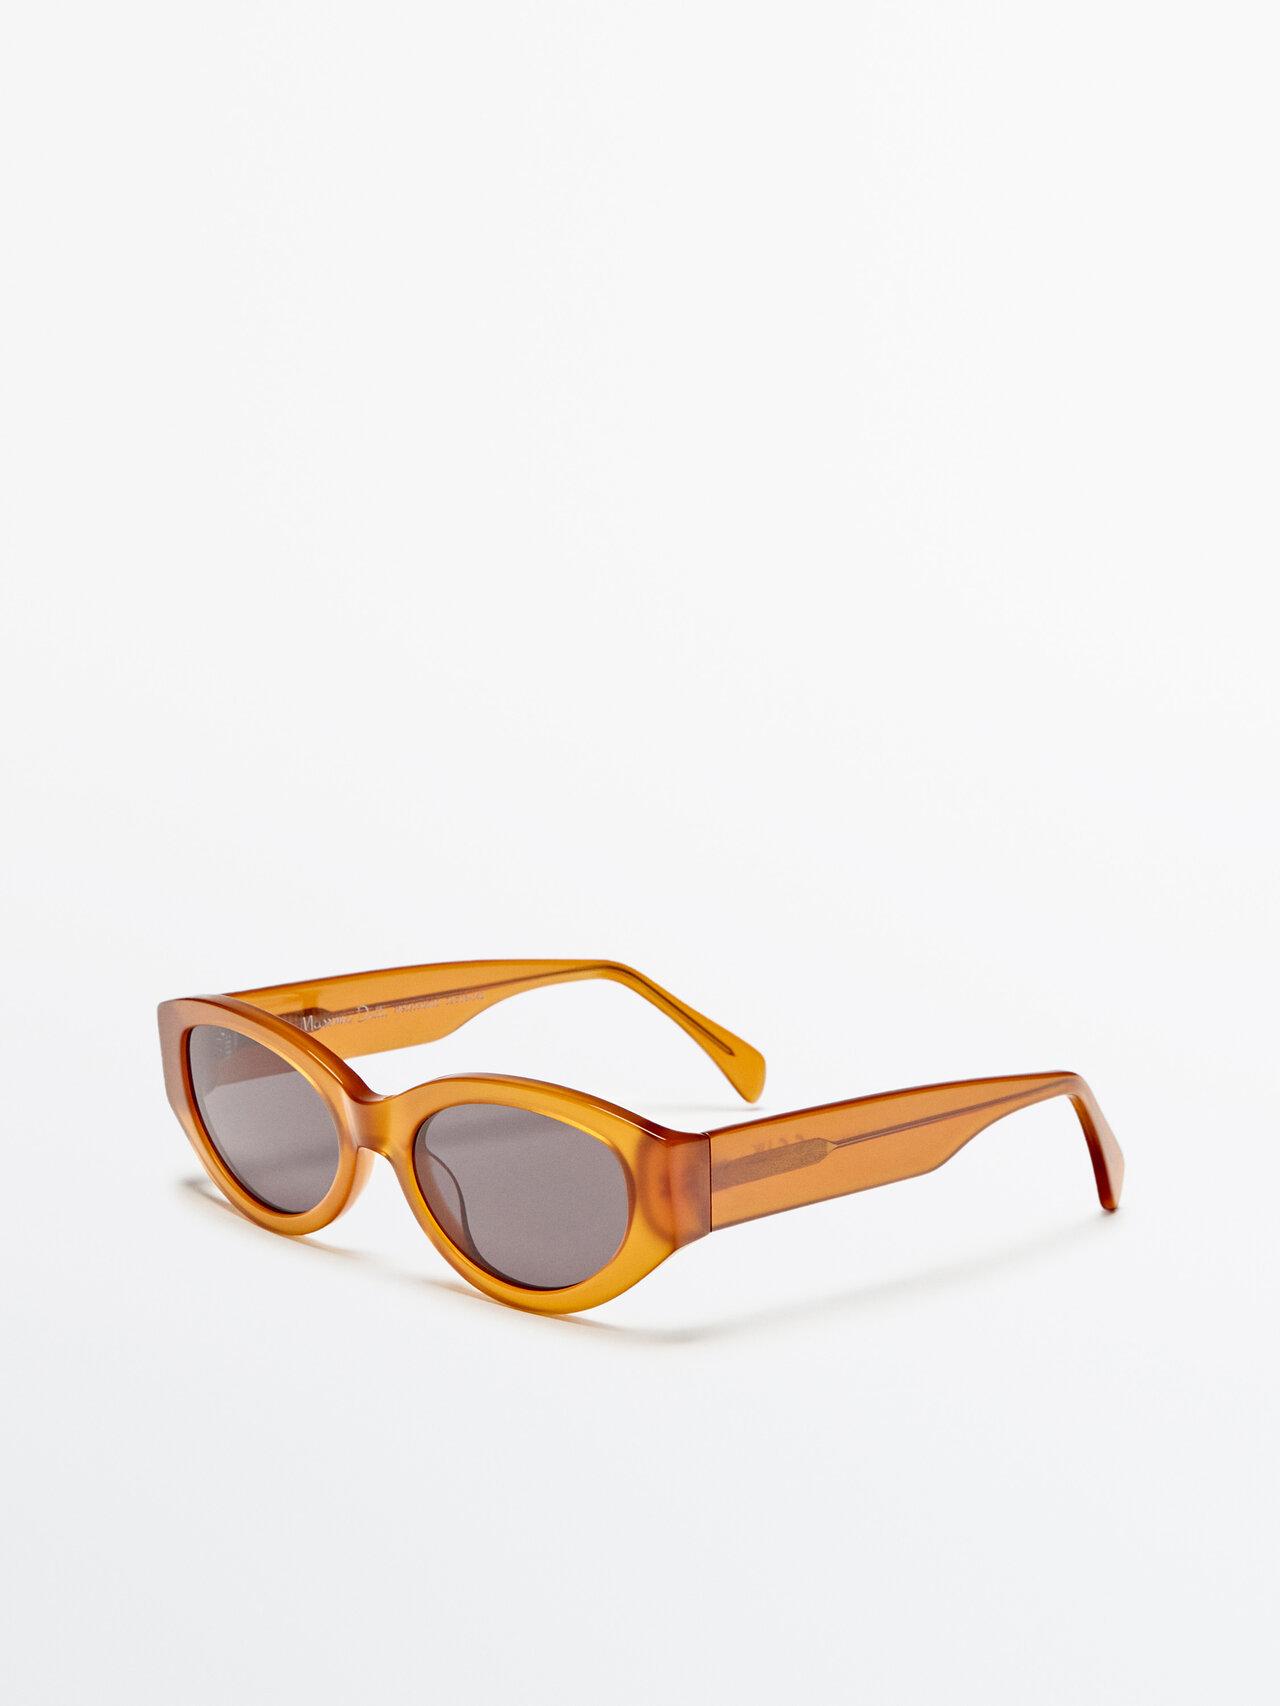 MASSIMO DUTTI Oval Sunglasses in Orange | Lyst